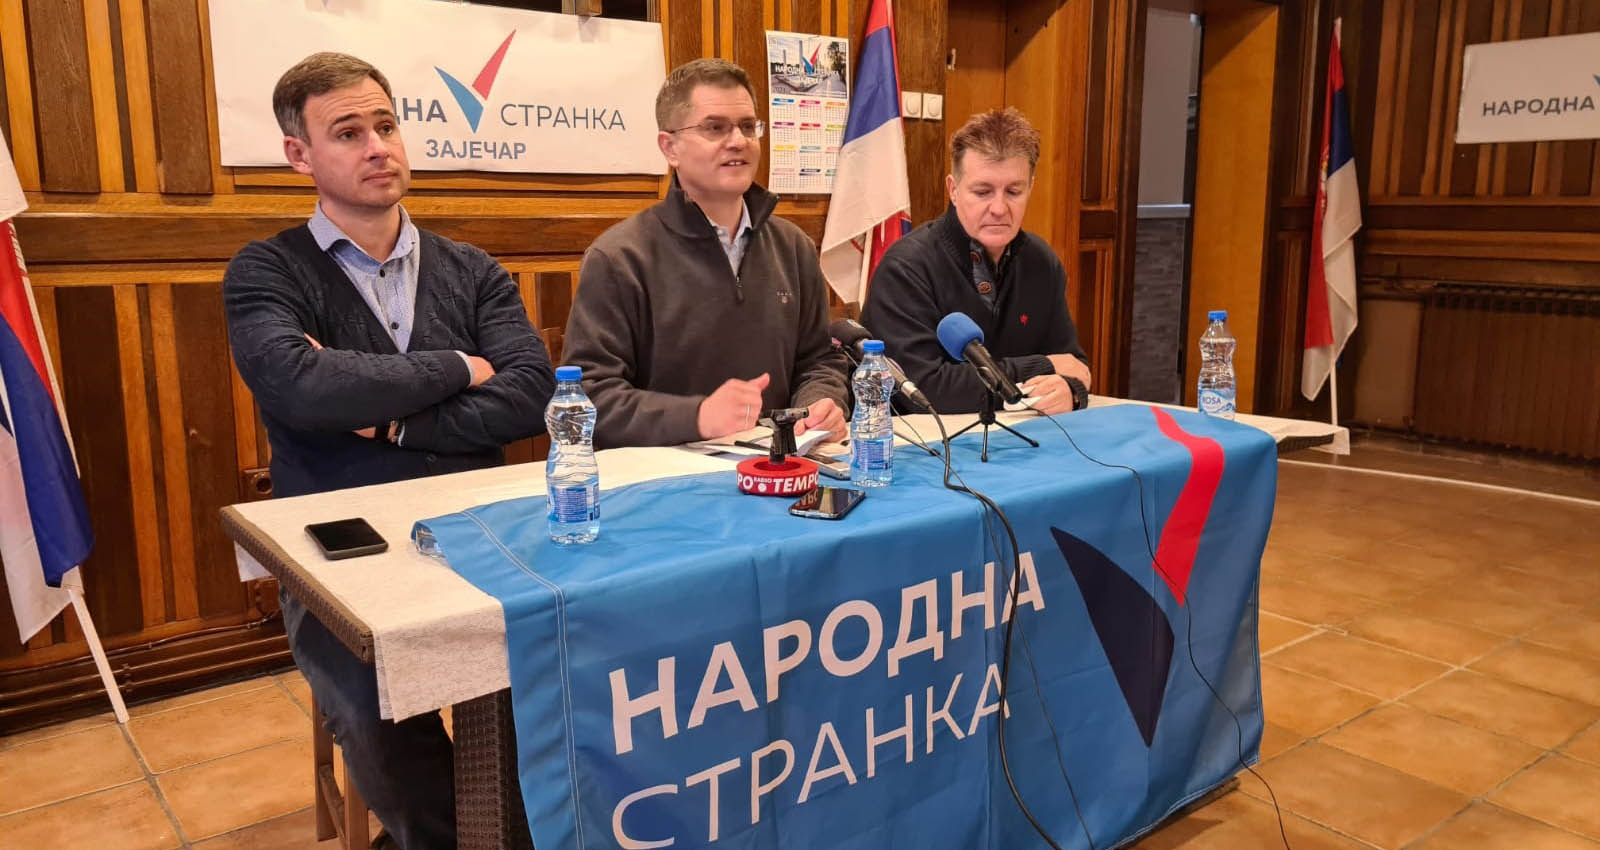 Јеремић: Народна странка захтева одлагање избора у Зајечару, Косјерићу и Прешеву